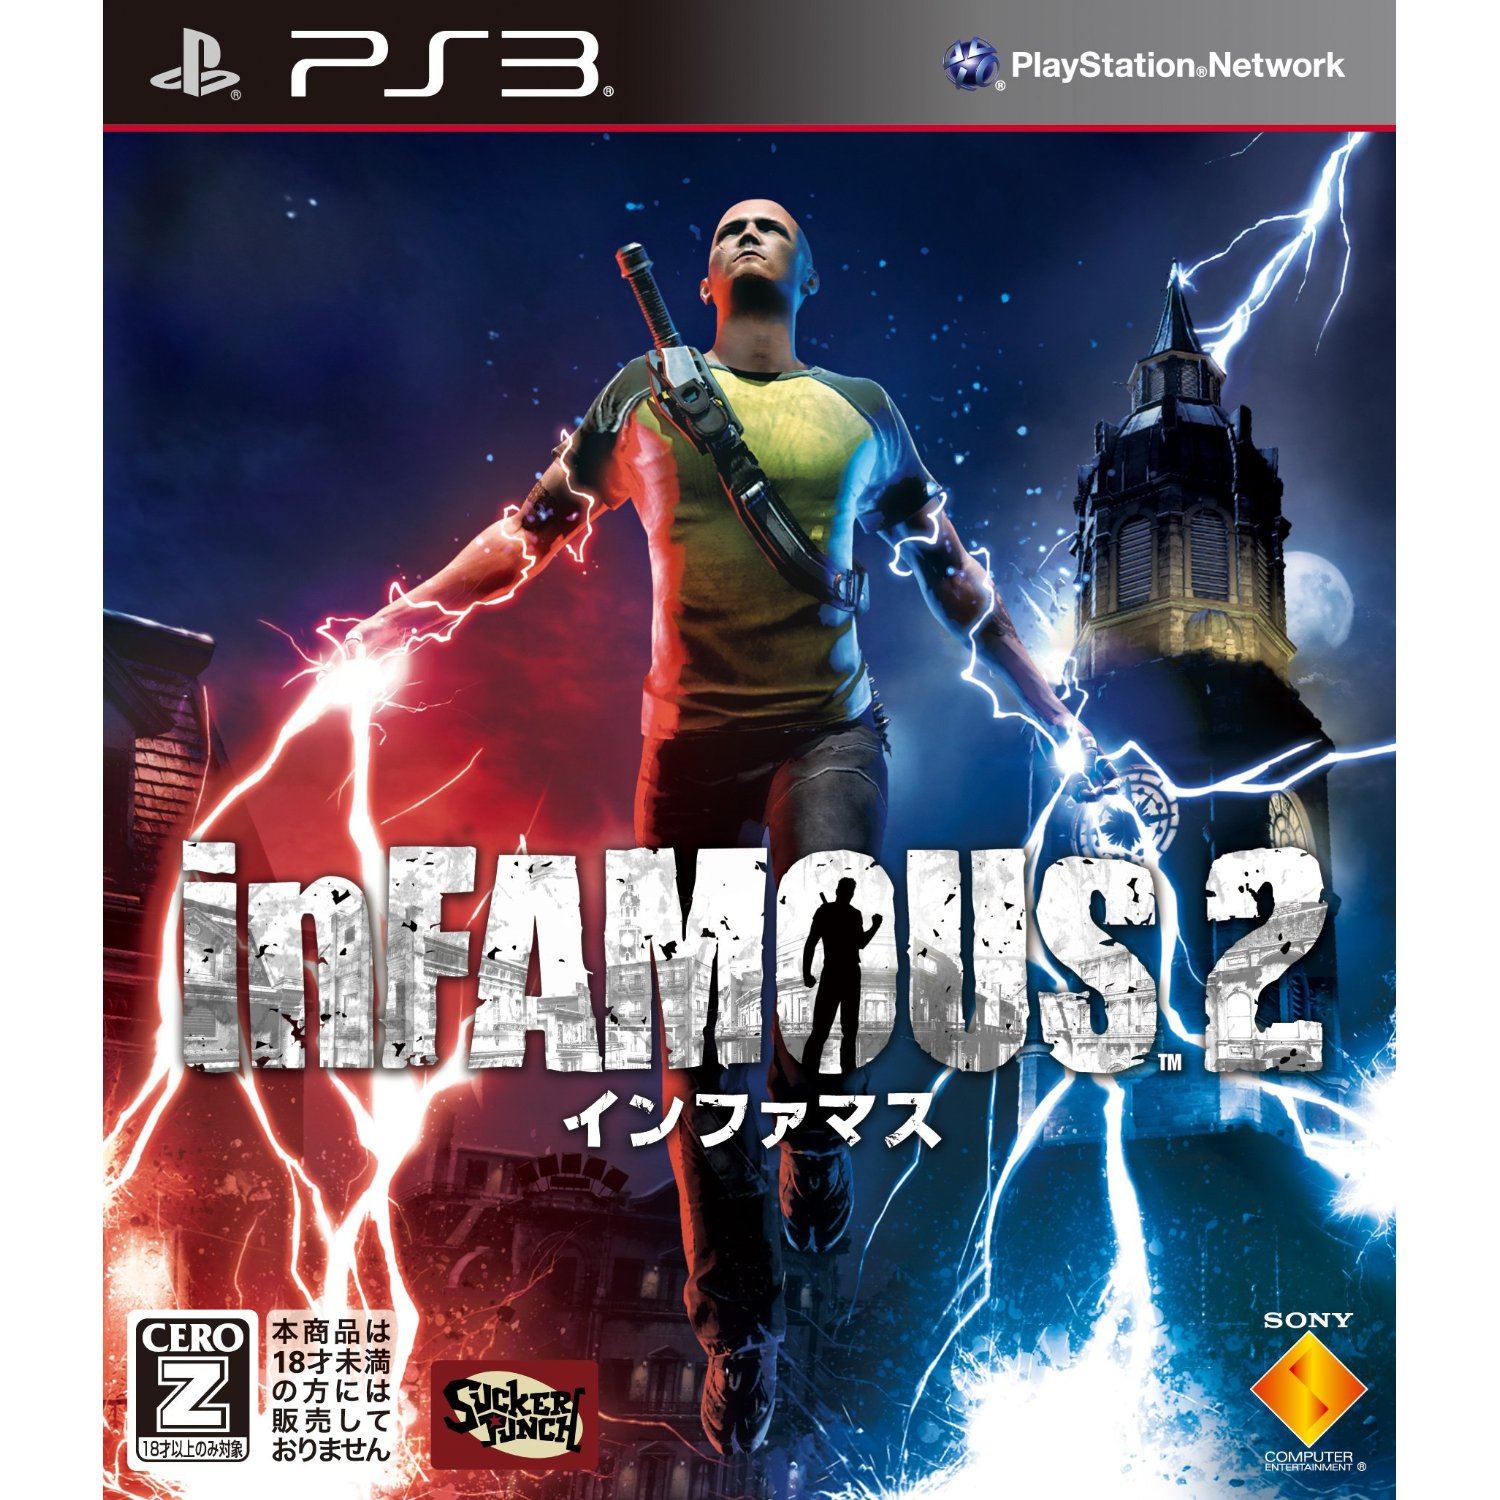 Geaccepteerd Vergelden vrouwelijk inFamous 2 (Sony PlayStation 3, 2011) - Japanese Version for sale online |  eBay